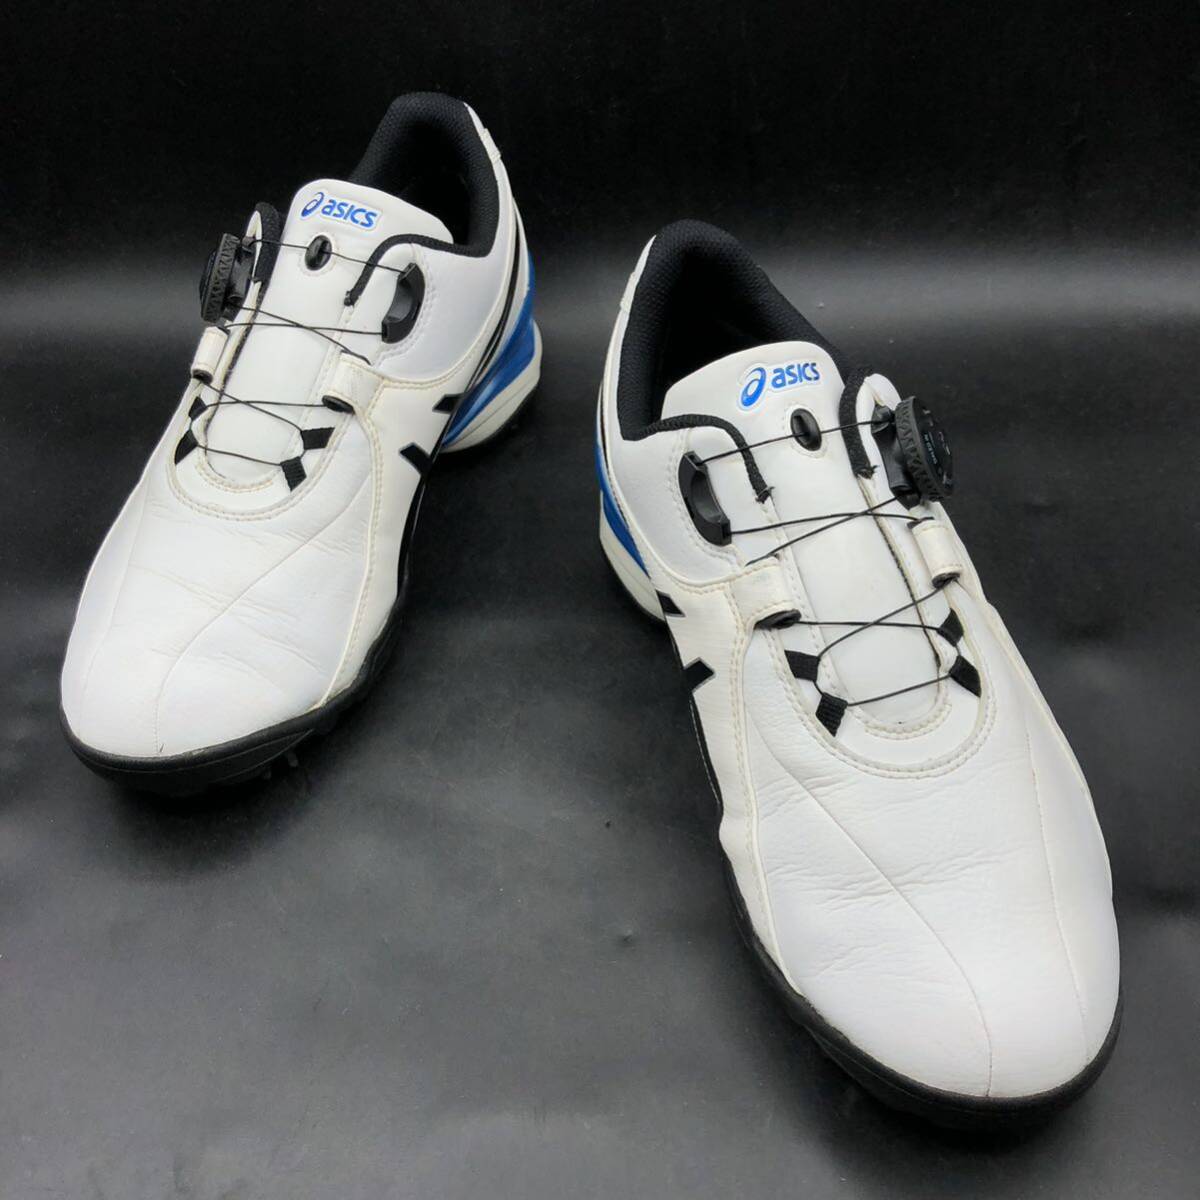 M2764 良品 ASICS アシックス TGN910 GEL-ACE TOUR Boa ゴルフシューズ スパイクシューズ ボア メンズ US8/26.0cm ホワイト ブルー 靴